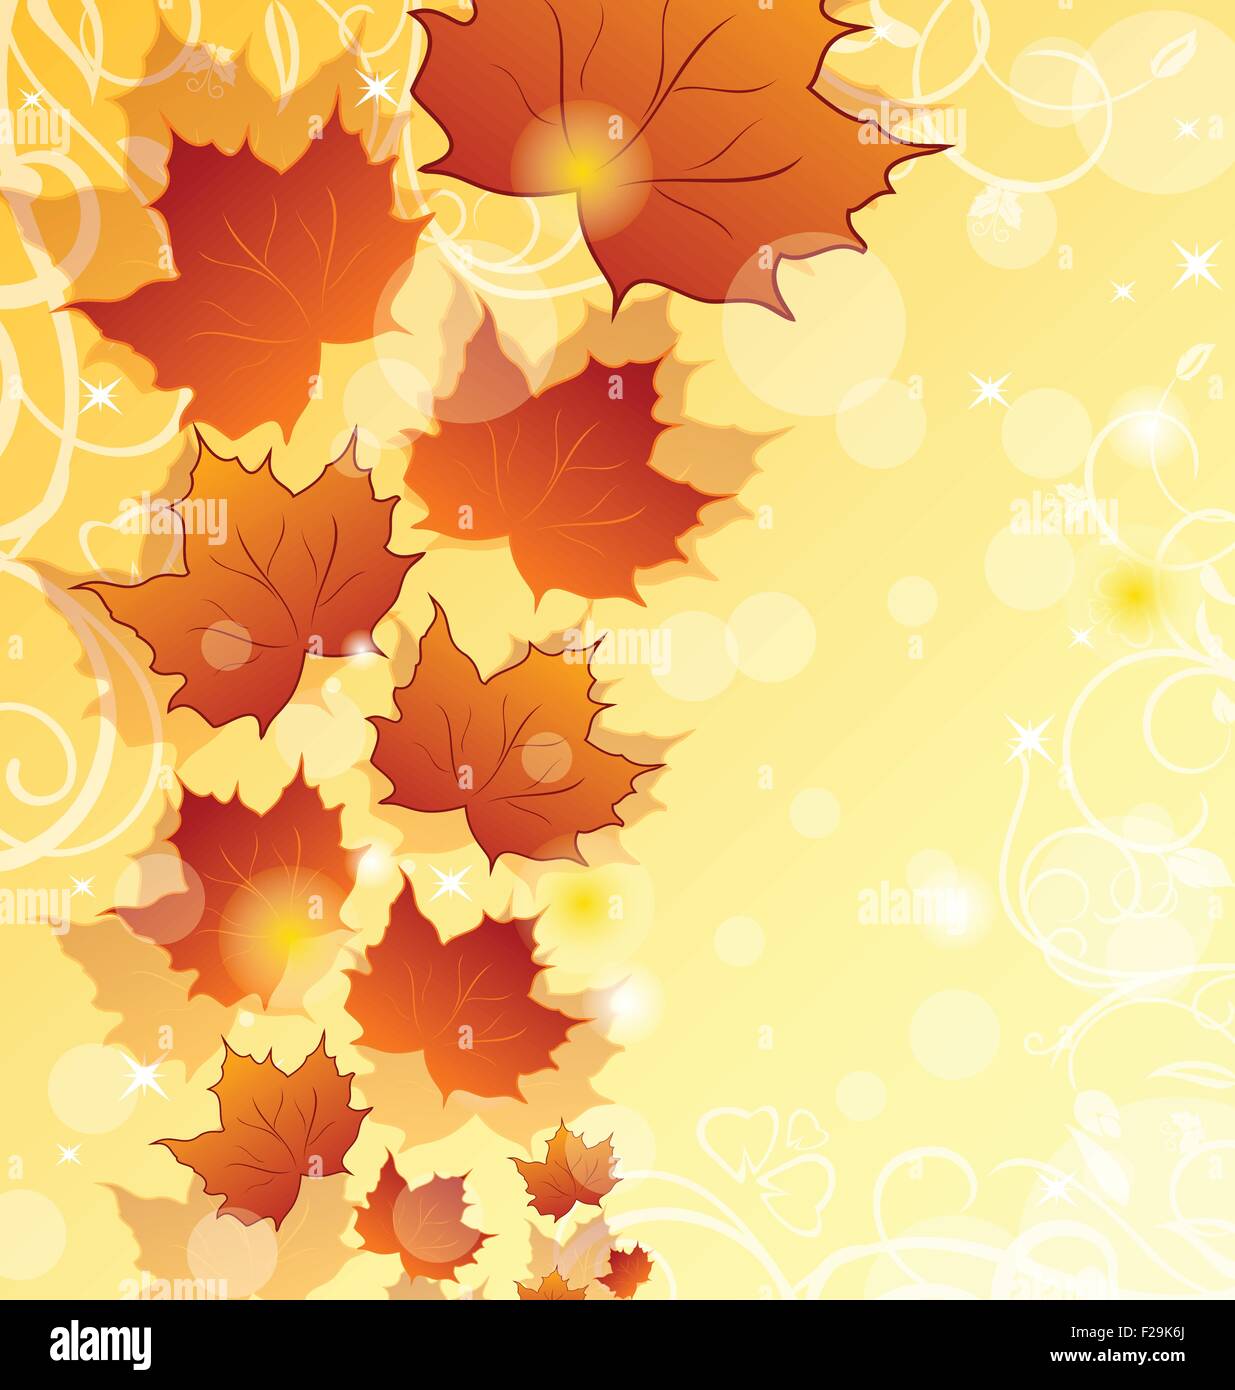 Herbst Blumen Hintergrund mit Ahorn-Blätter Stock Vektor